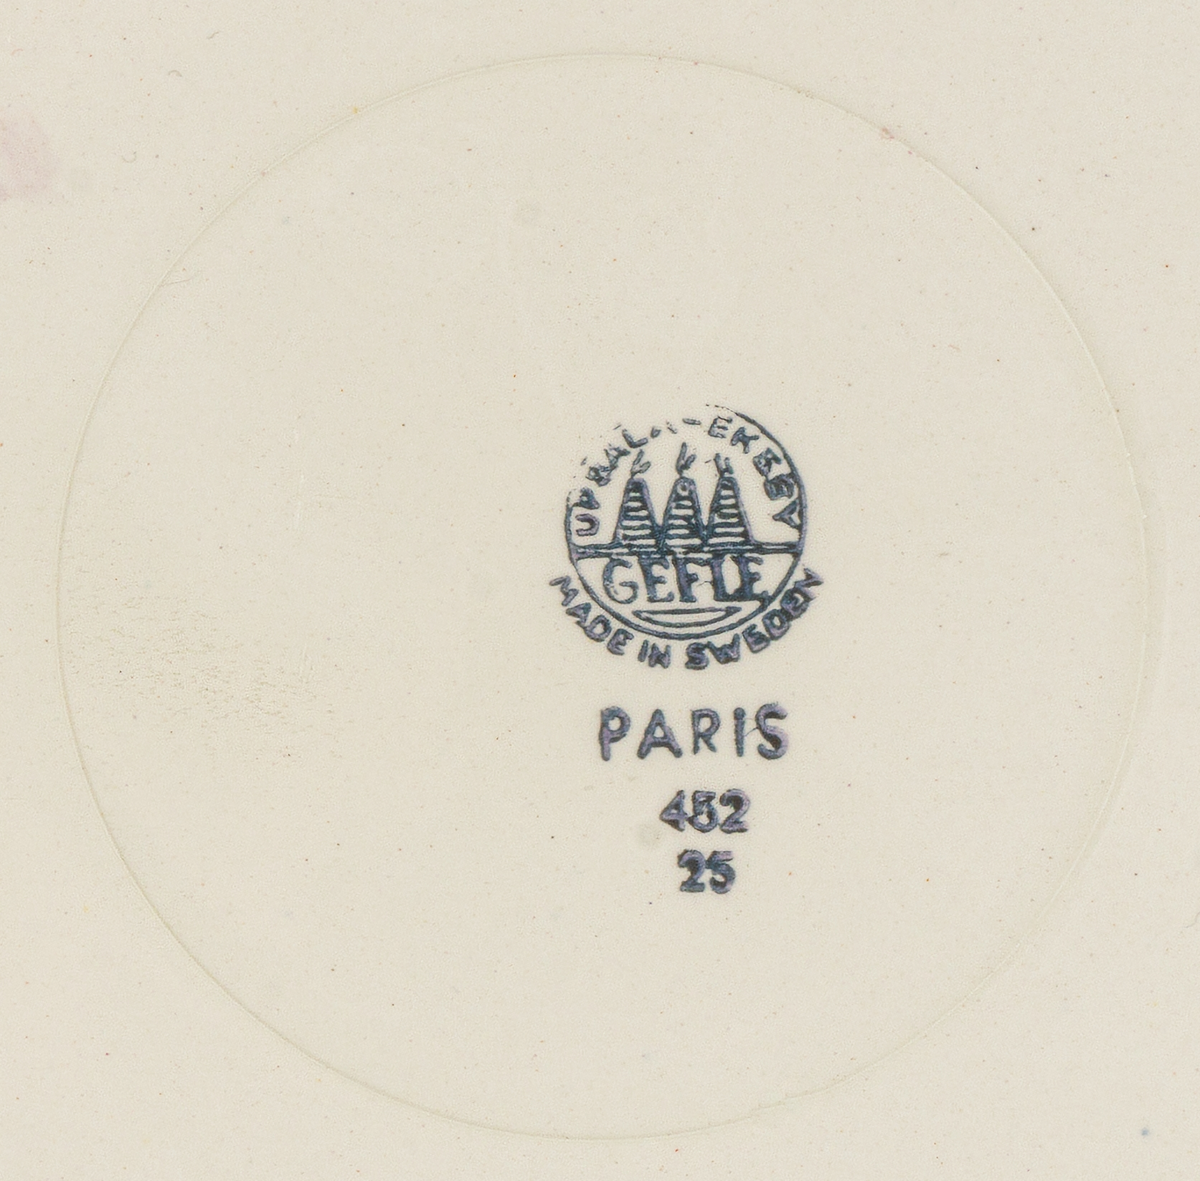 Falt tallrik i flintgods, modell AS, dekor Paris, påfågeldekor i polykromt tryck. Dekoren skapad av chefsdekoratör Eugen Trost 1952.